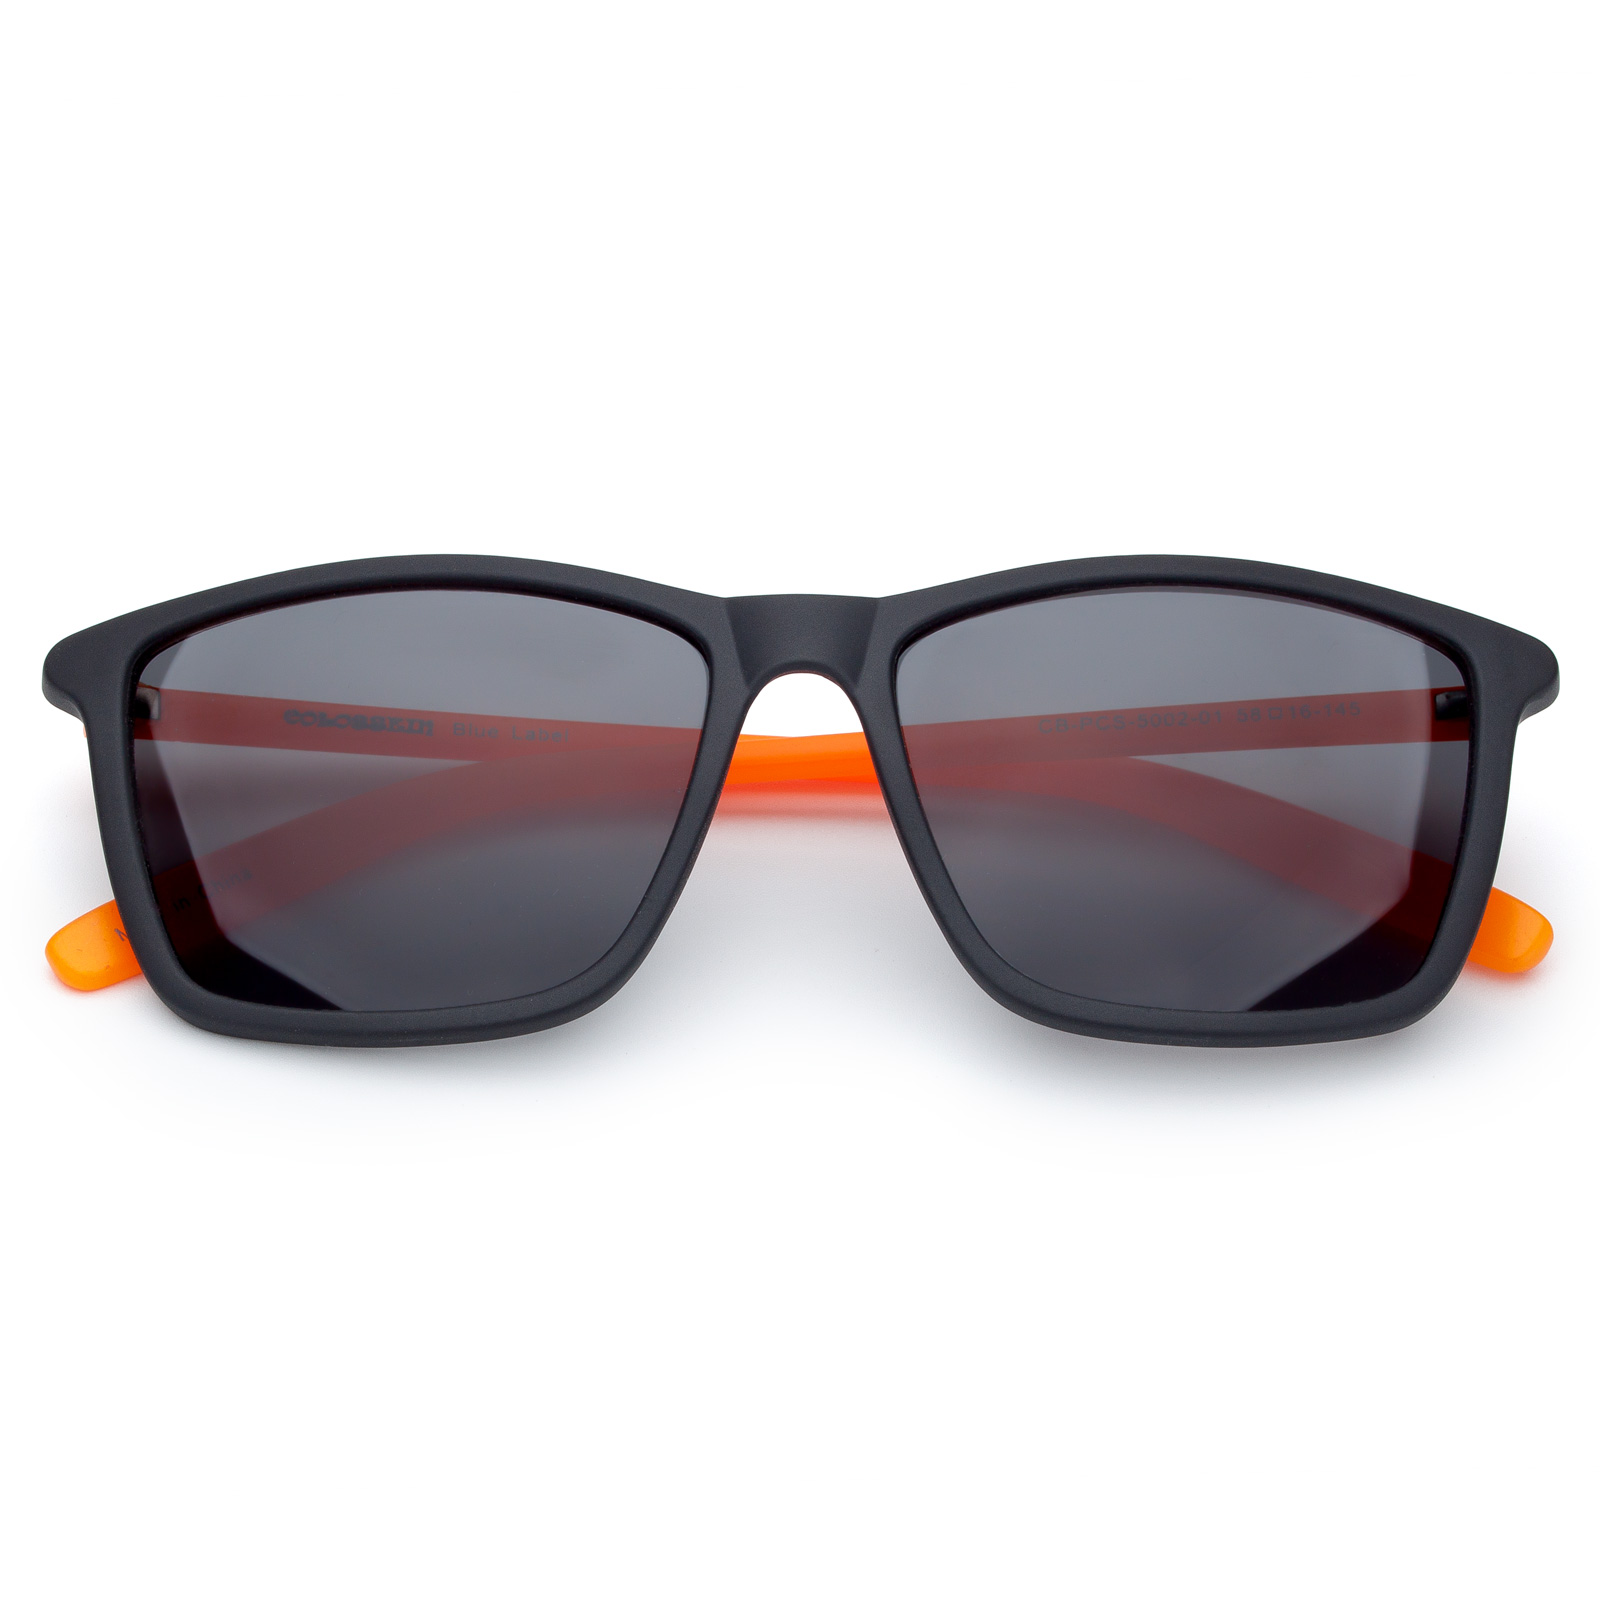 Sunglasses for Men UV Protection Sun Glasses Classic Lightweight Square Frame Stylish Design 100% UV Blocking Lenses